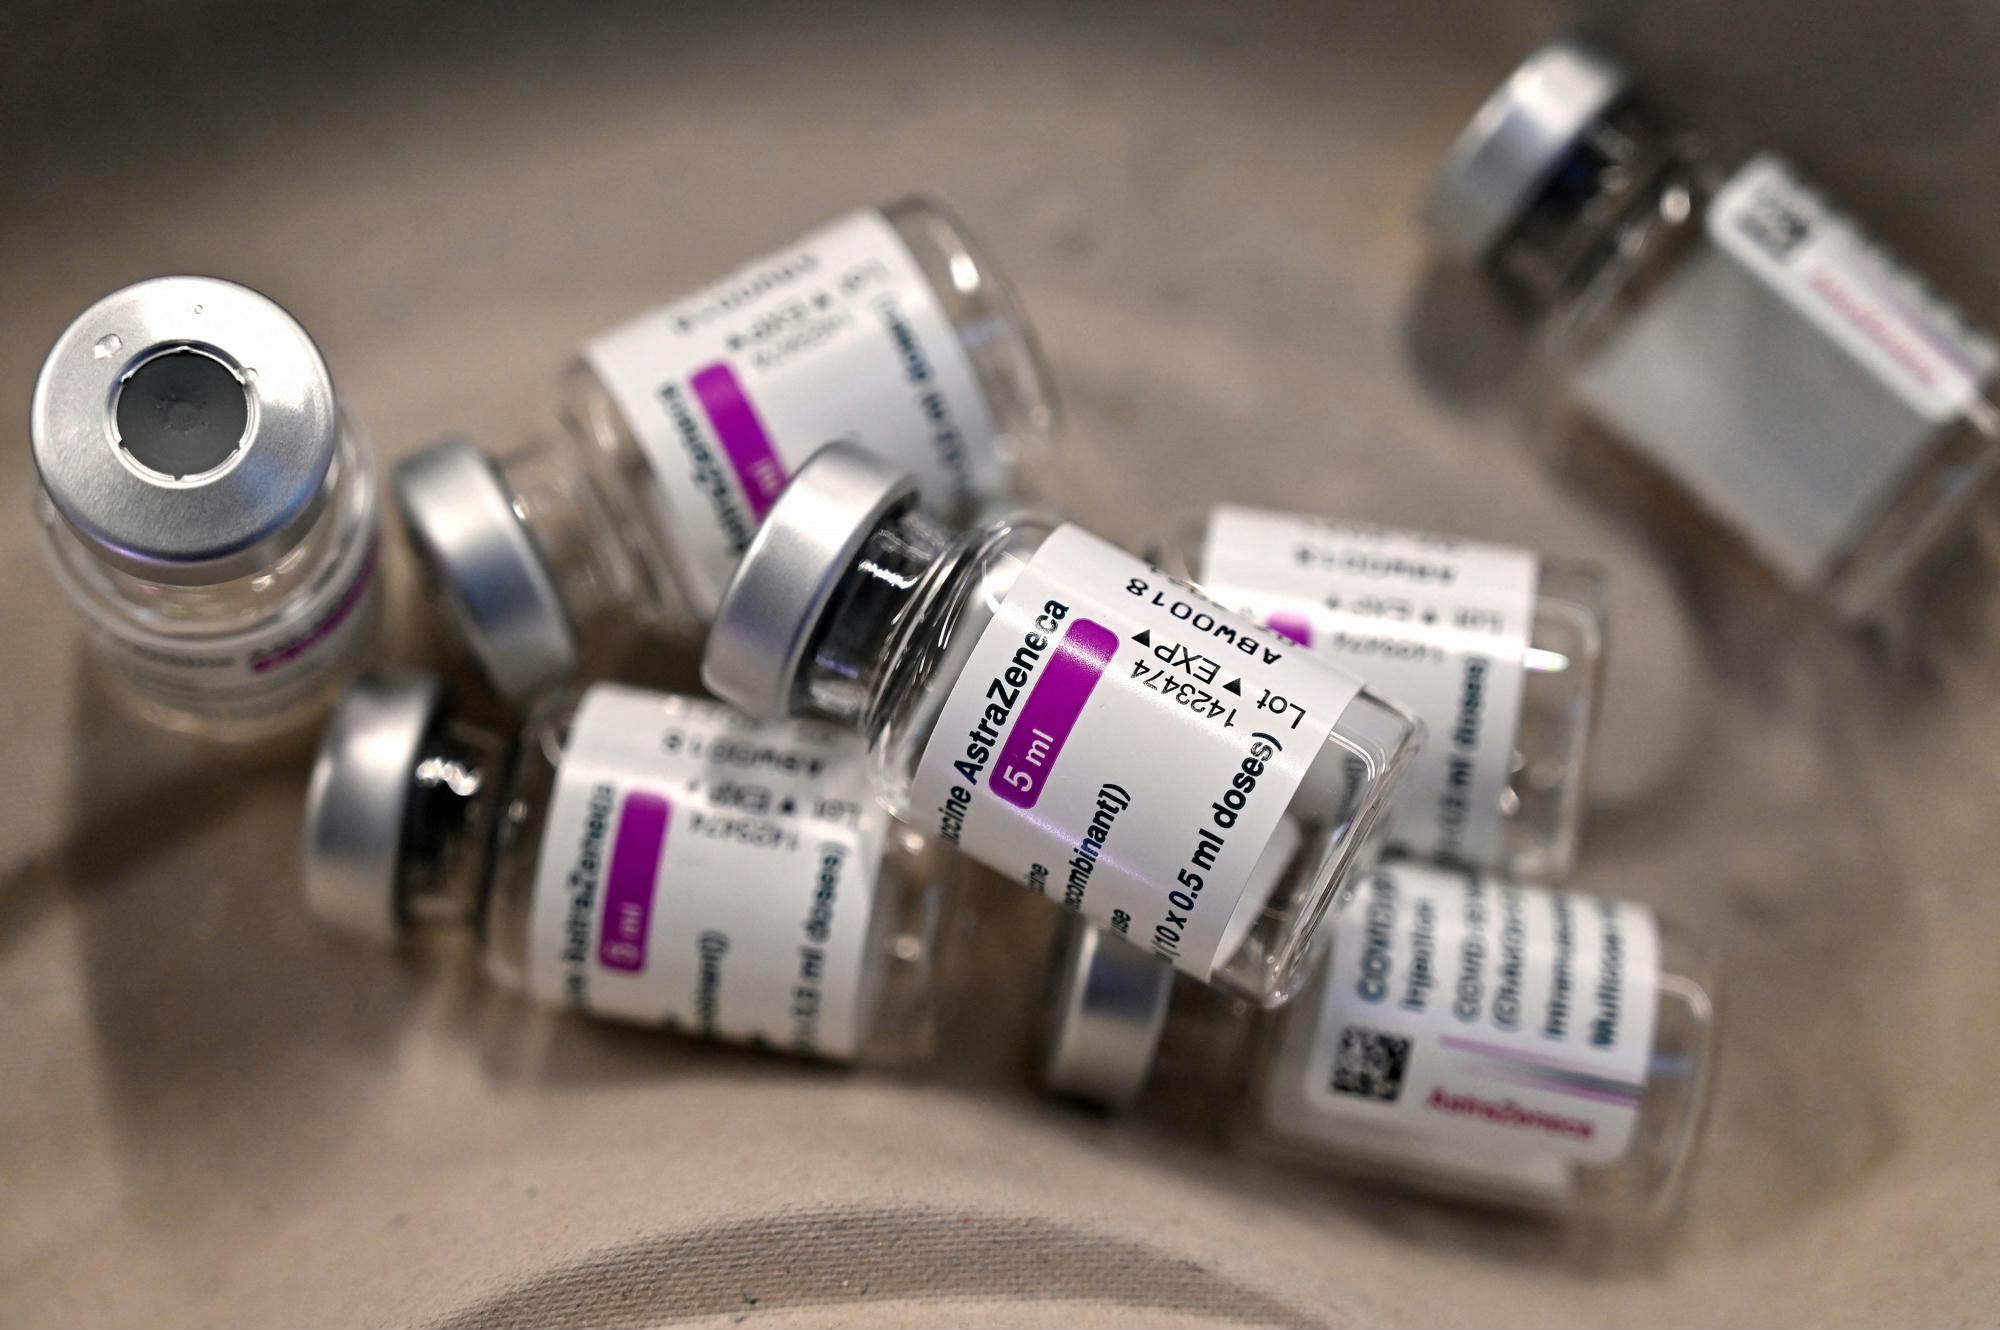 A statisztikák szerint az AstraZeneca vakcinájának előnyei felülírják a kockázatokat